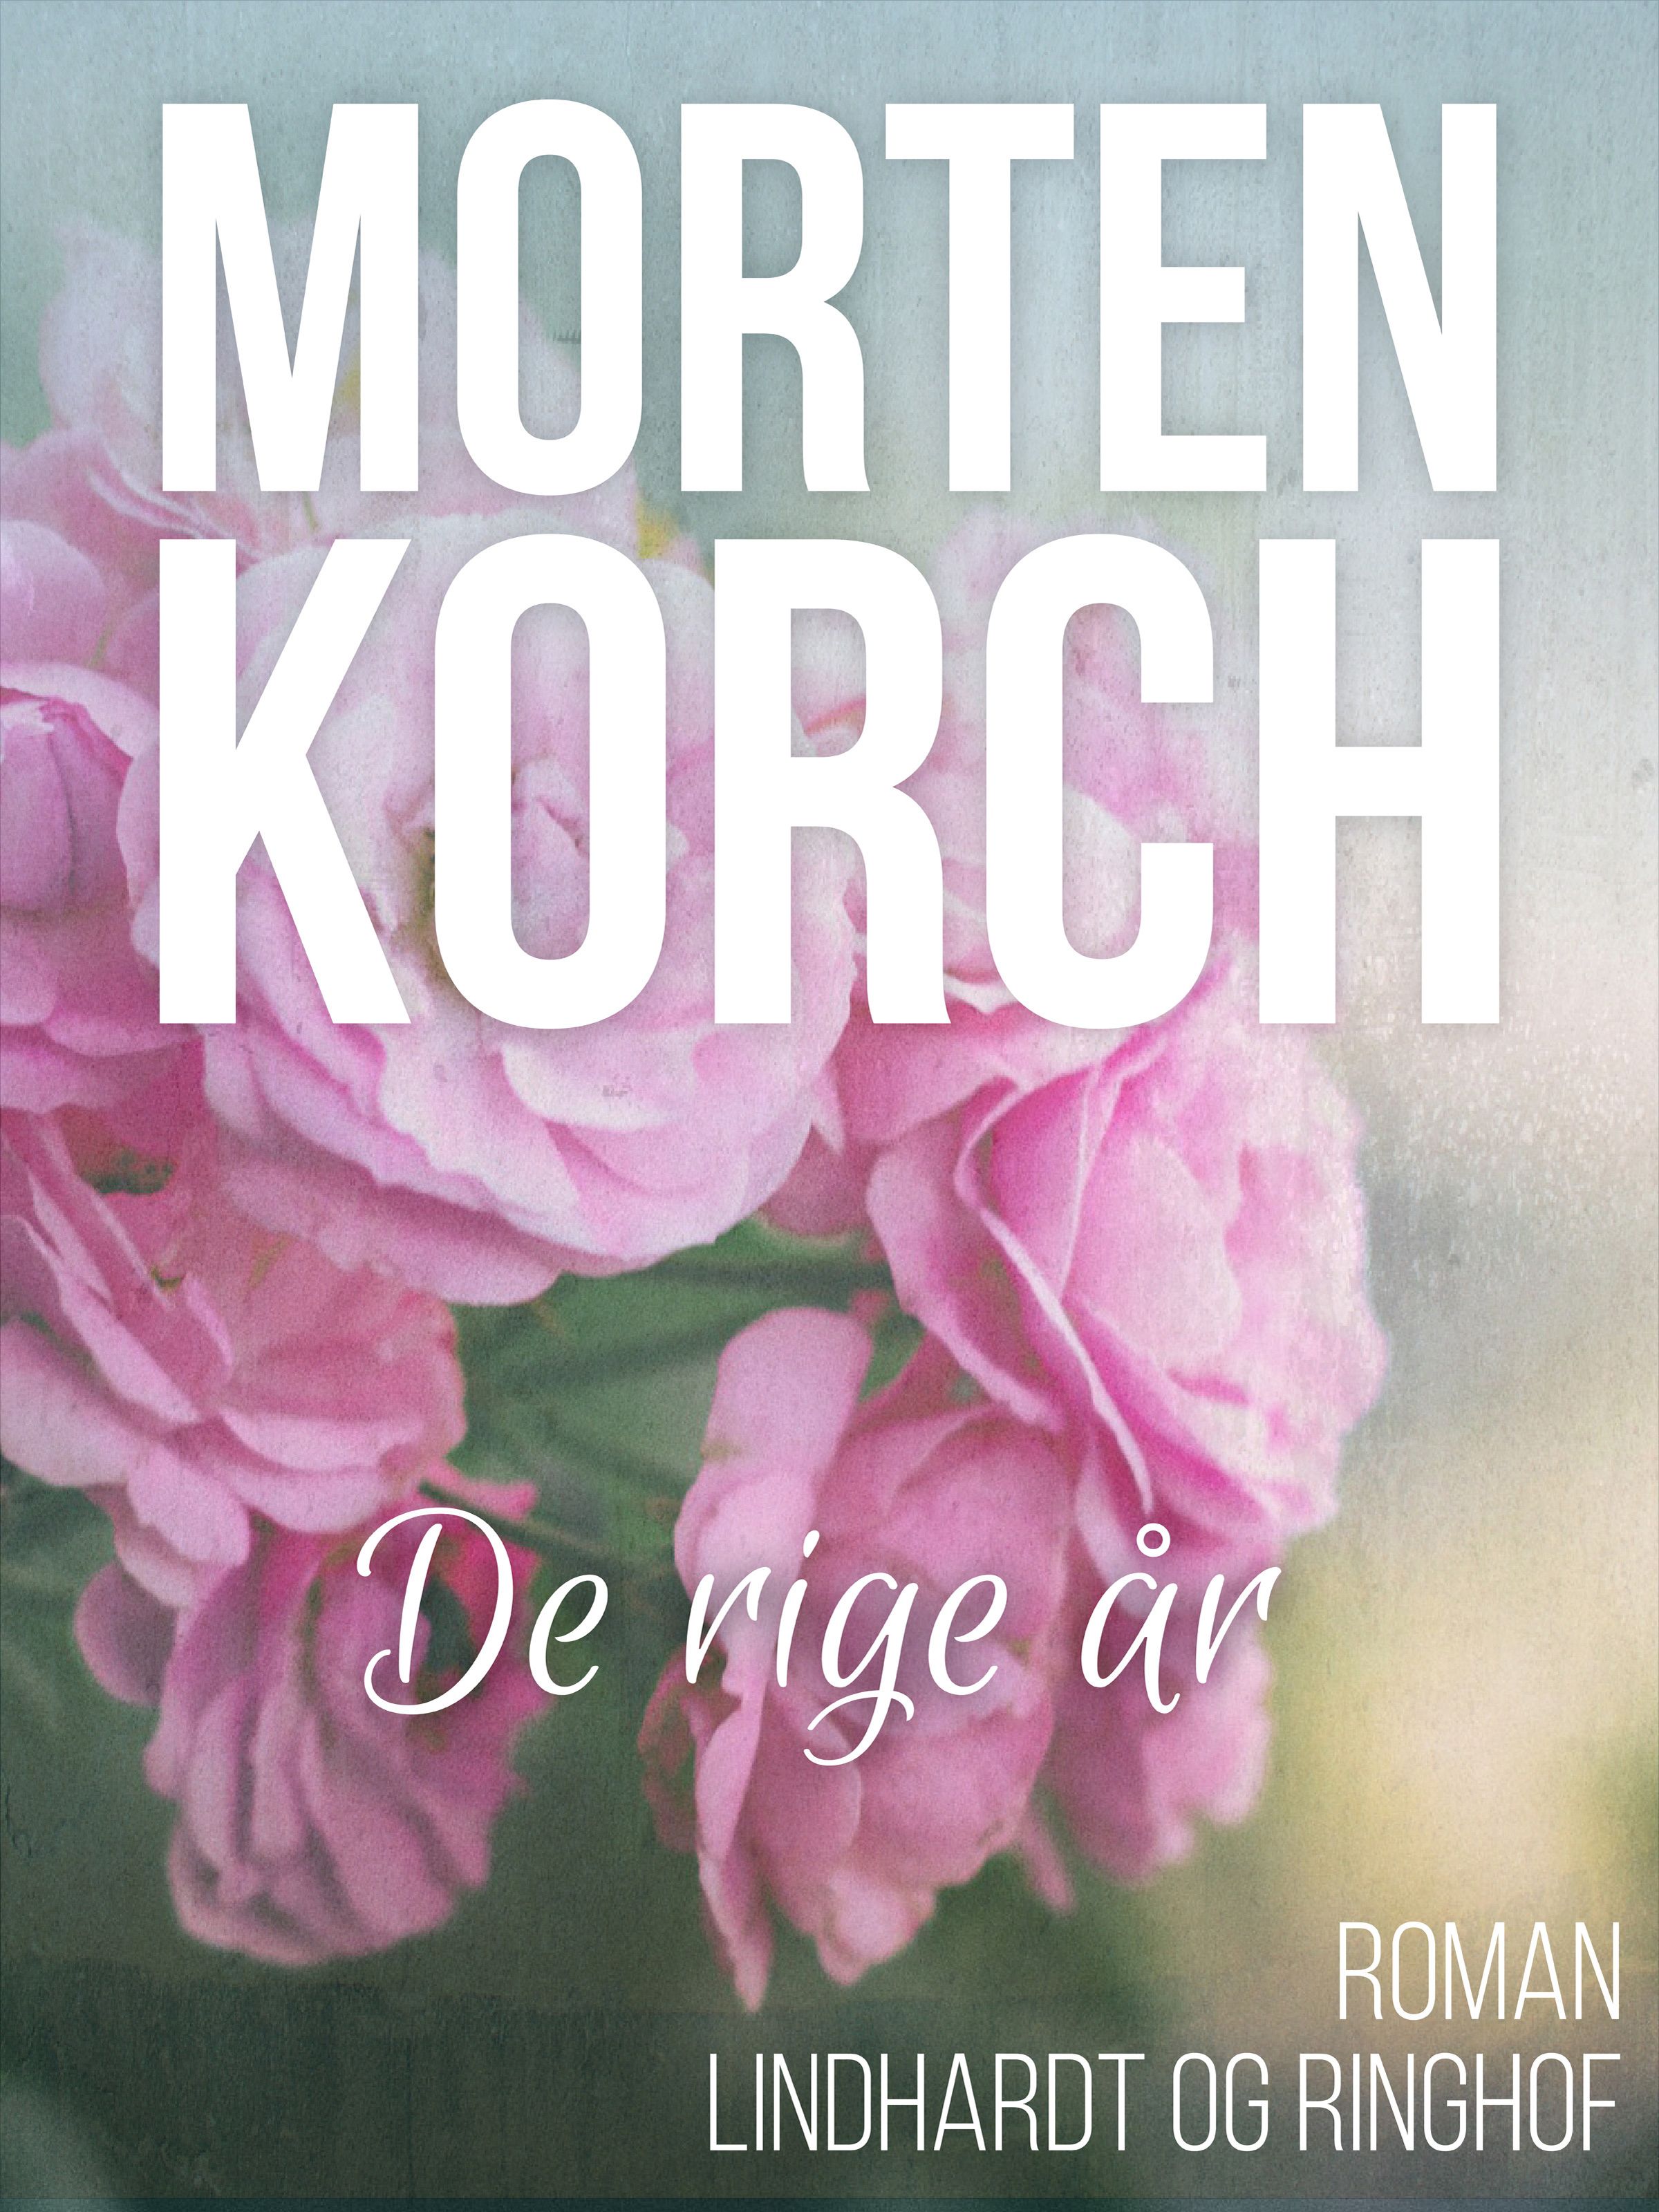 De rige år, e-bok av Morten Korch